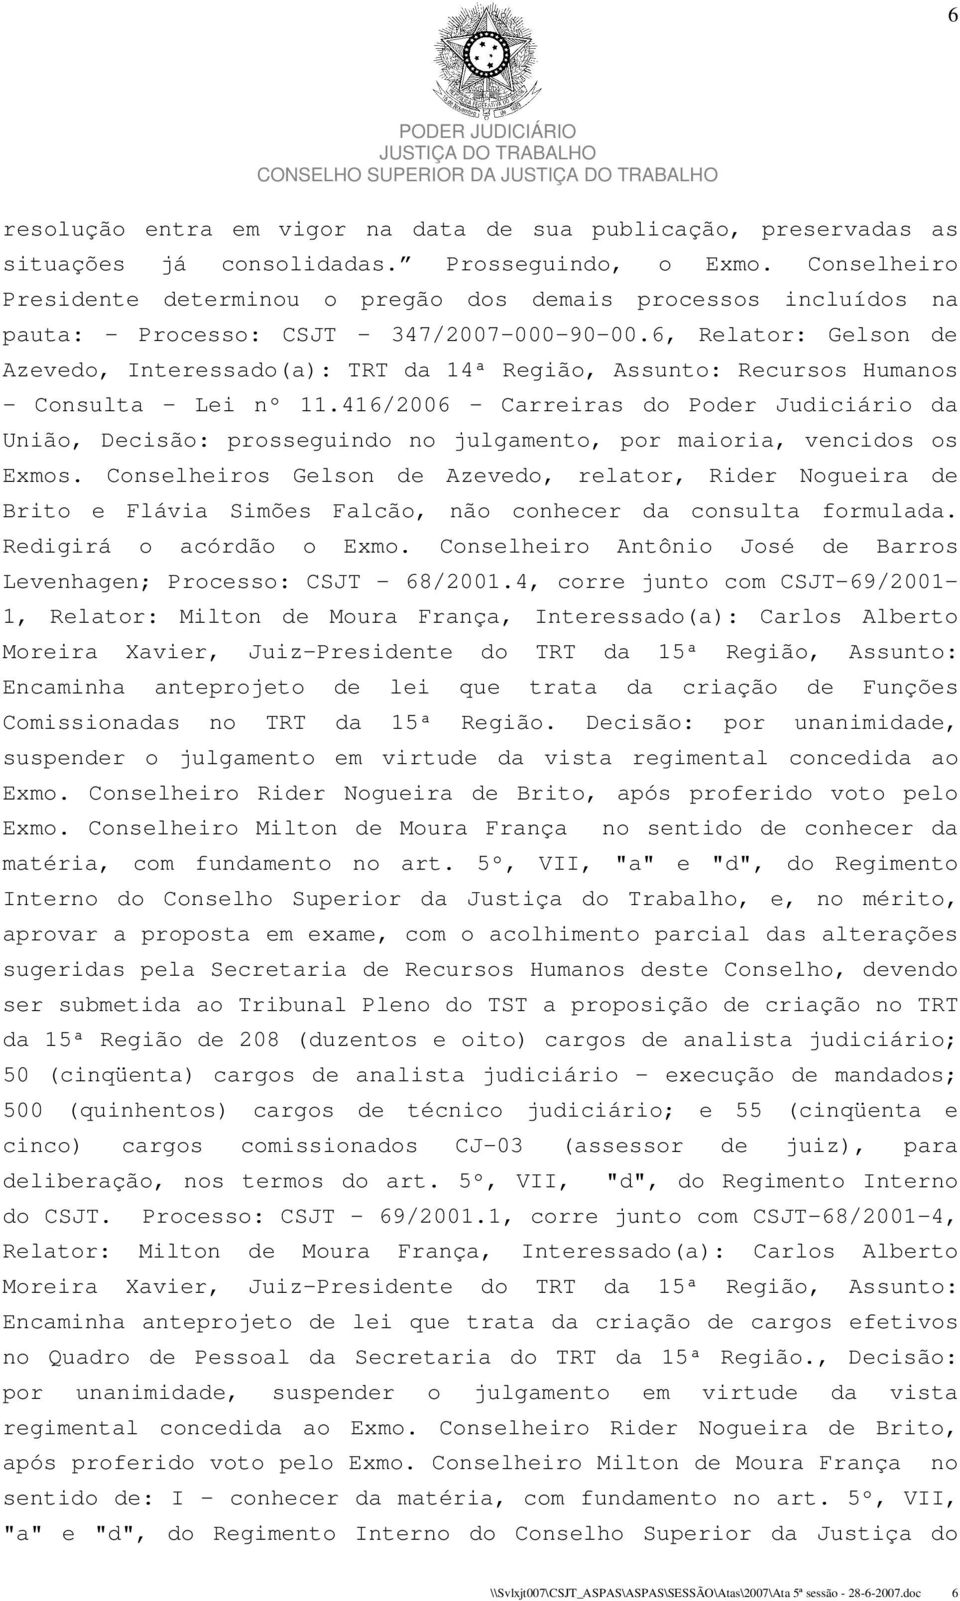 6, Relator: Gelson de Azevedo, Interessado(a): TRT da 14ª Região, Assunto: Recursos Humanos - Consulta - Lei nº 11.